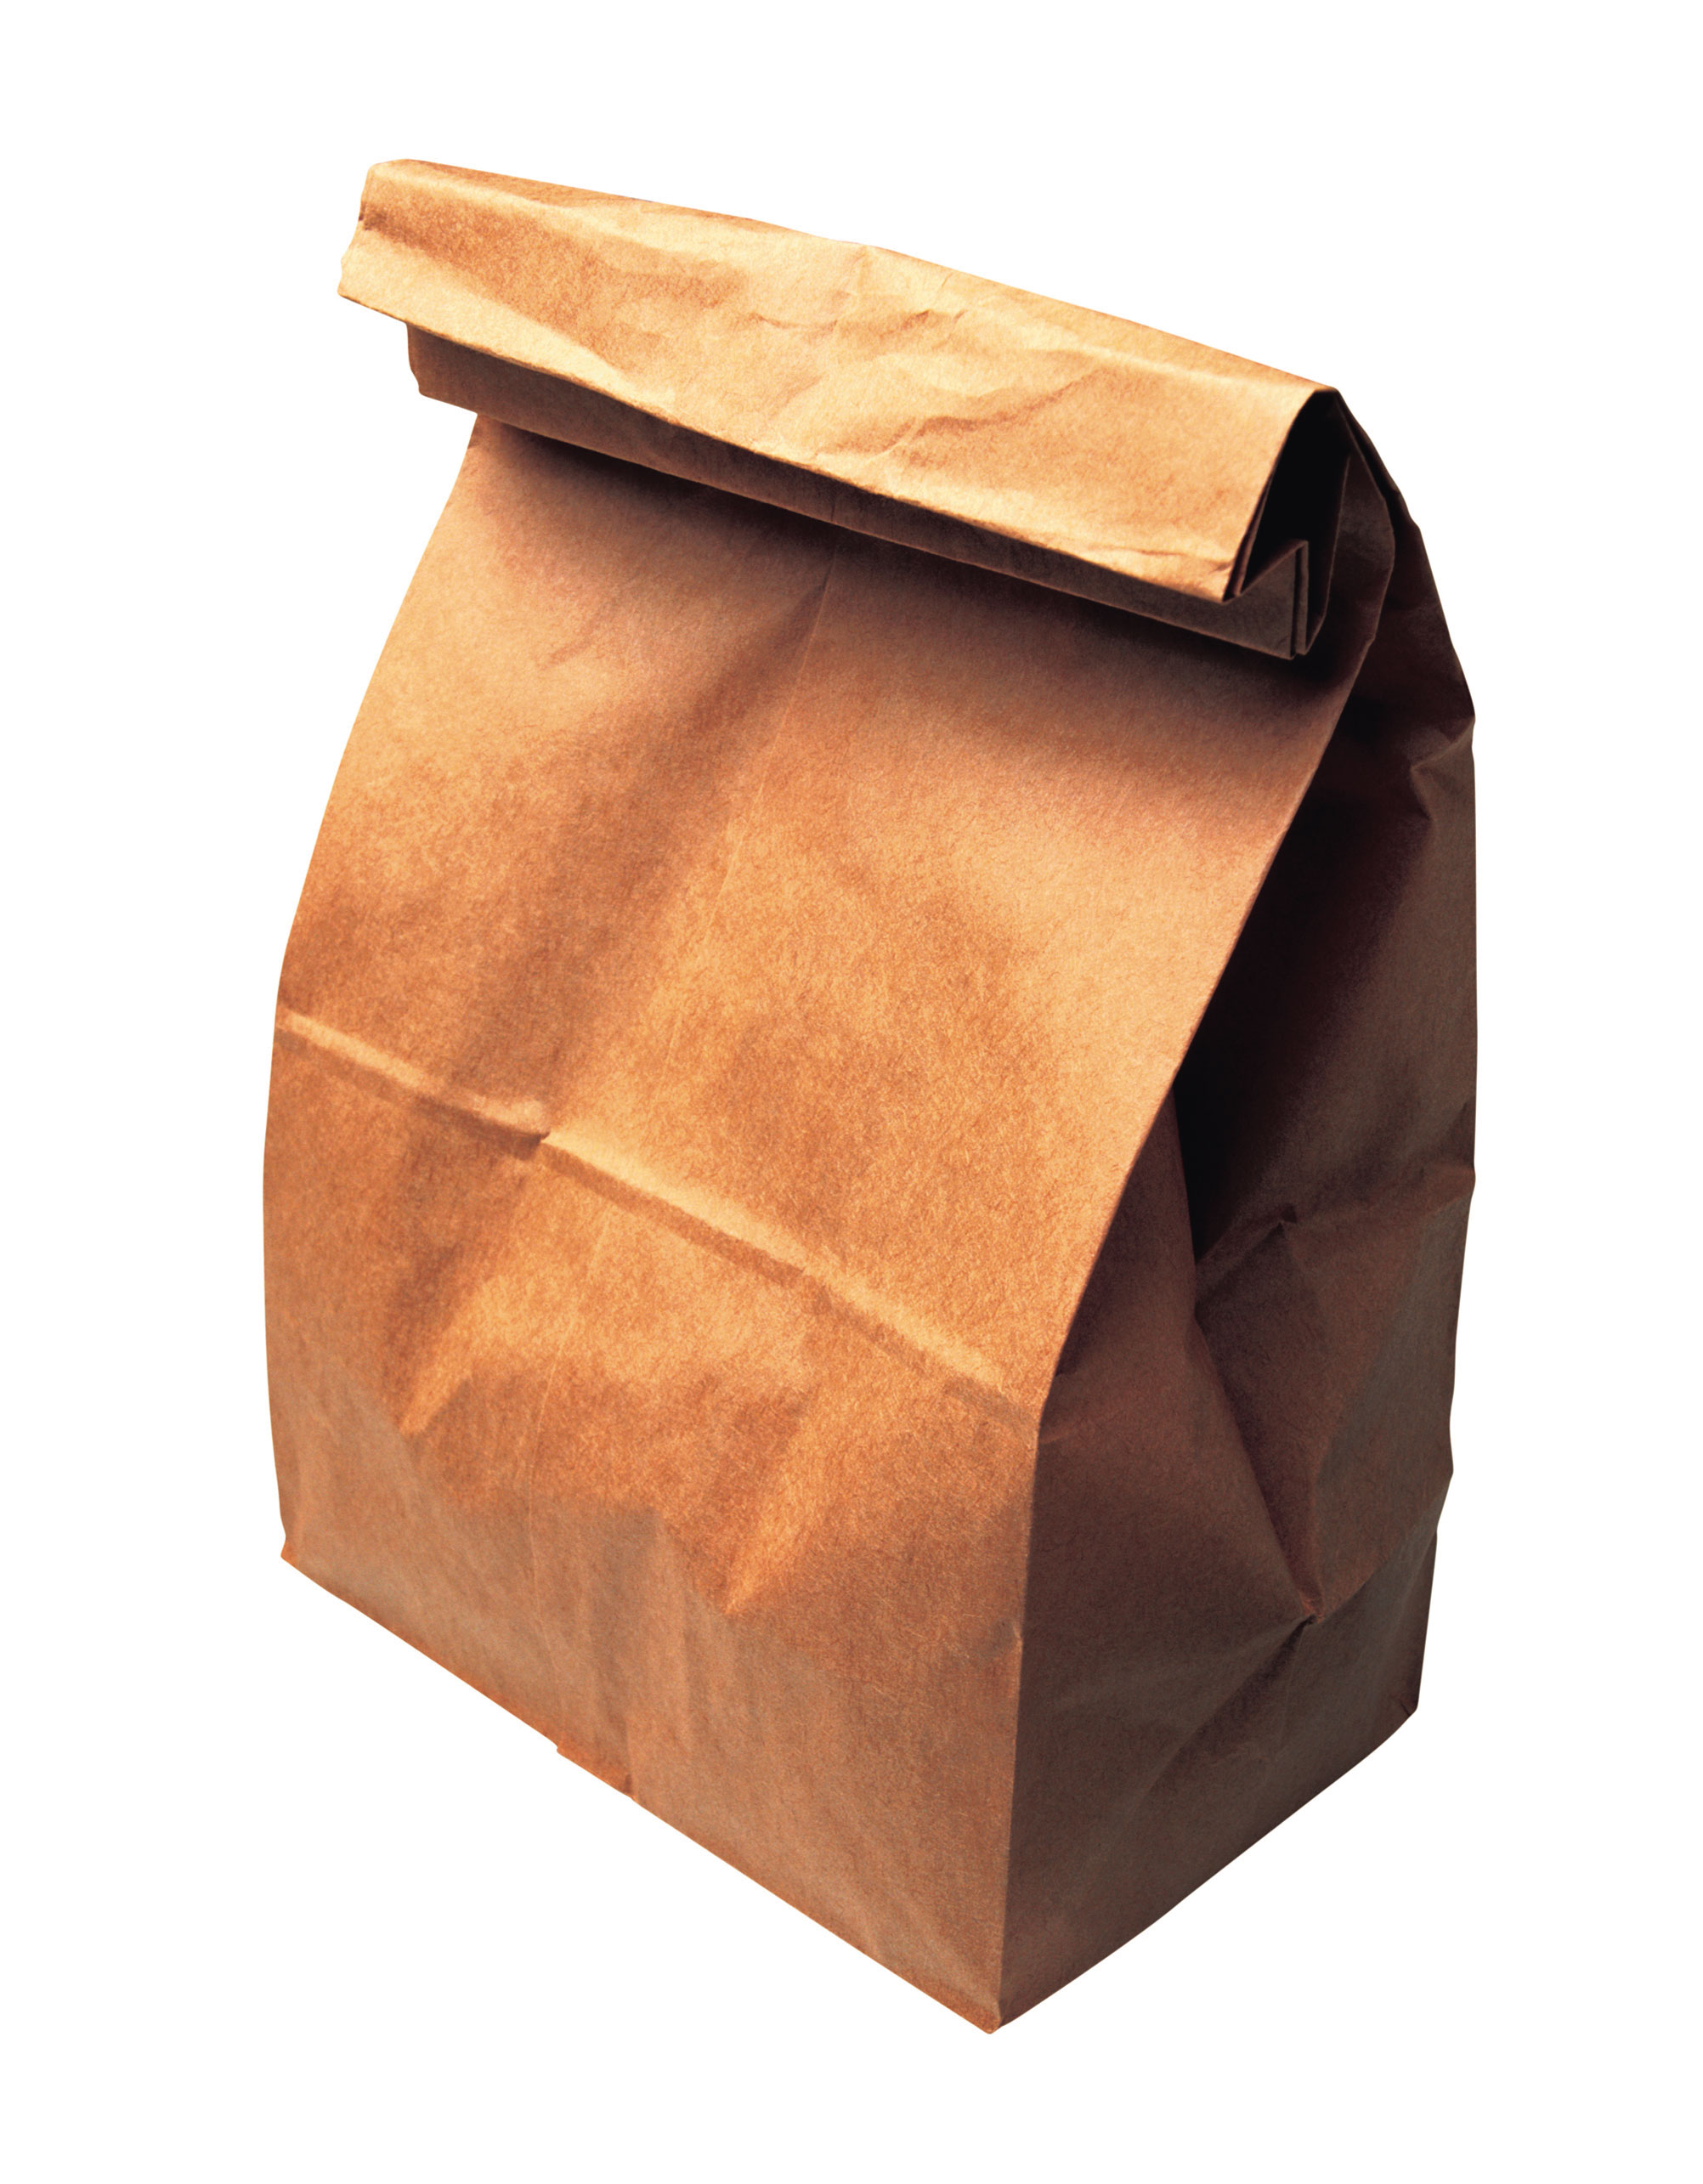 Bts Lunch Bag   Free Images At Clker Com   Vector Clip Art Online